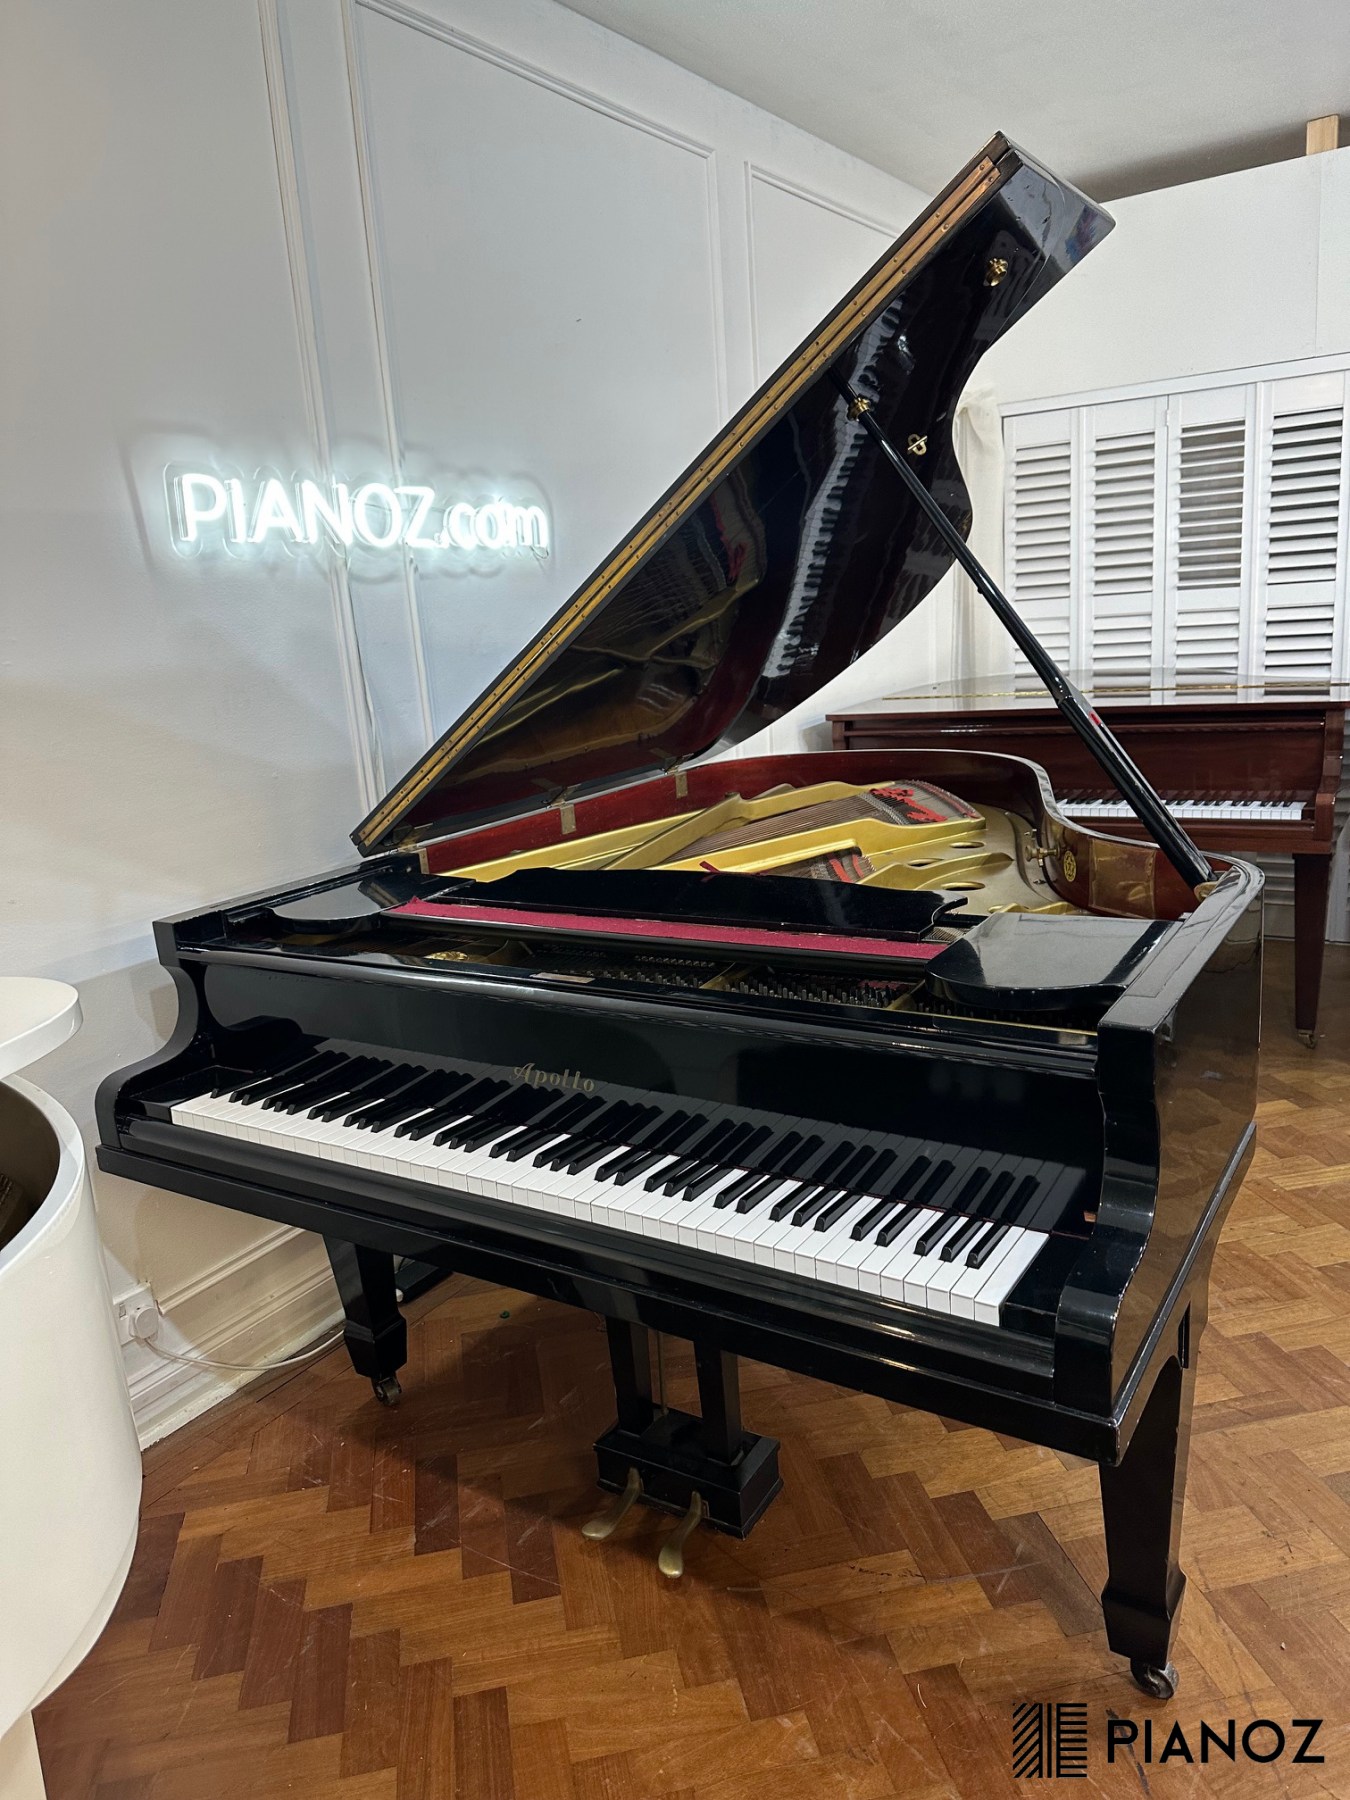 Apollo Japanese Grand Piano piano for sale in UK